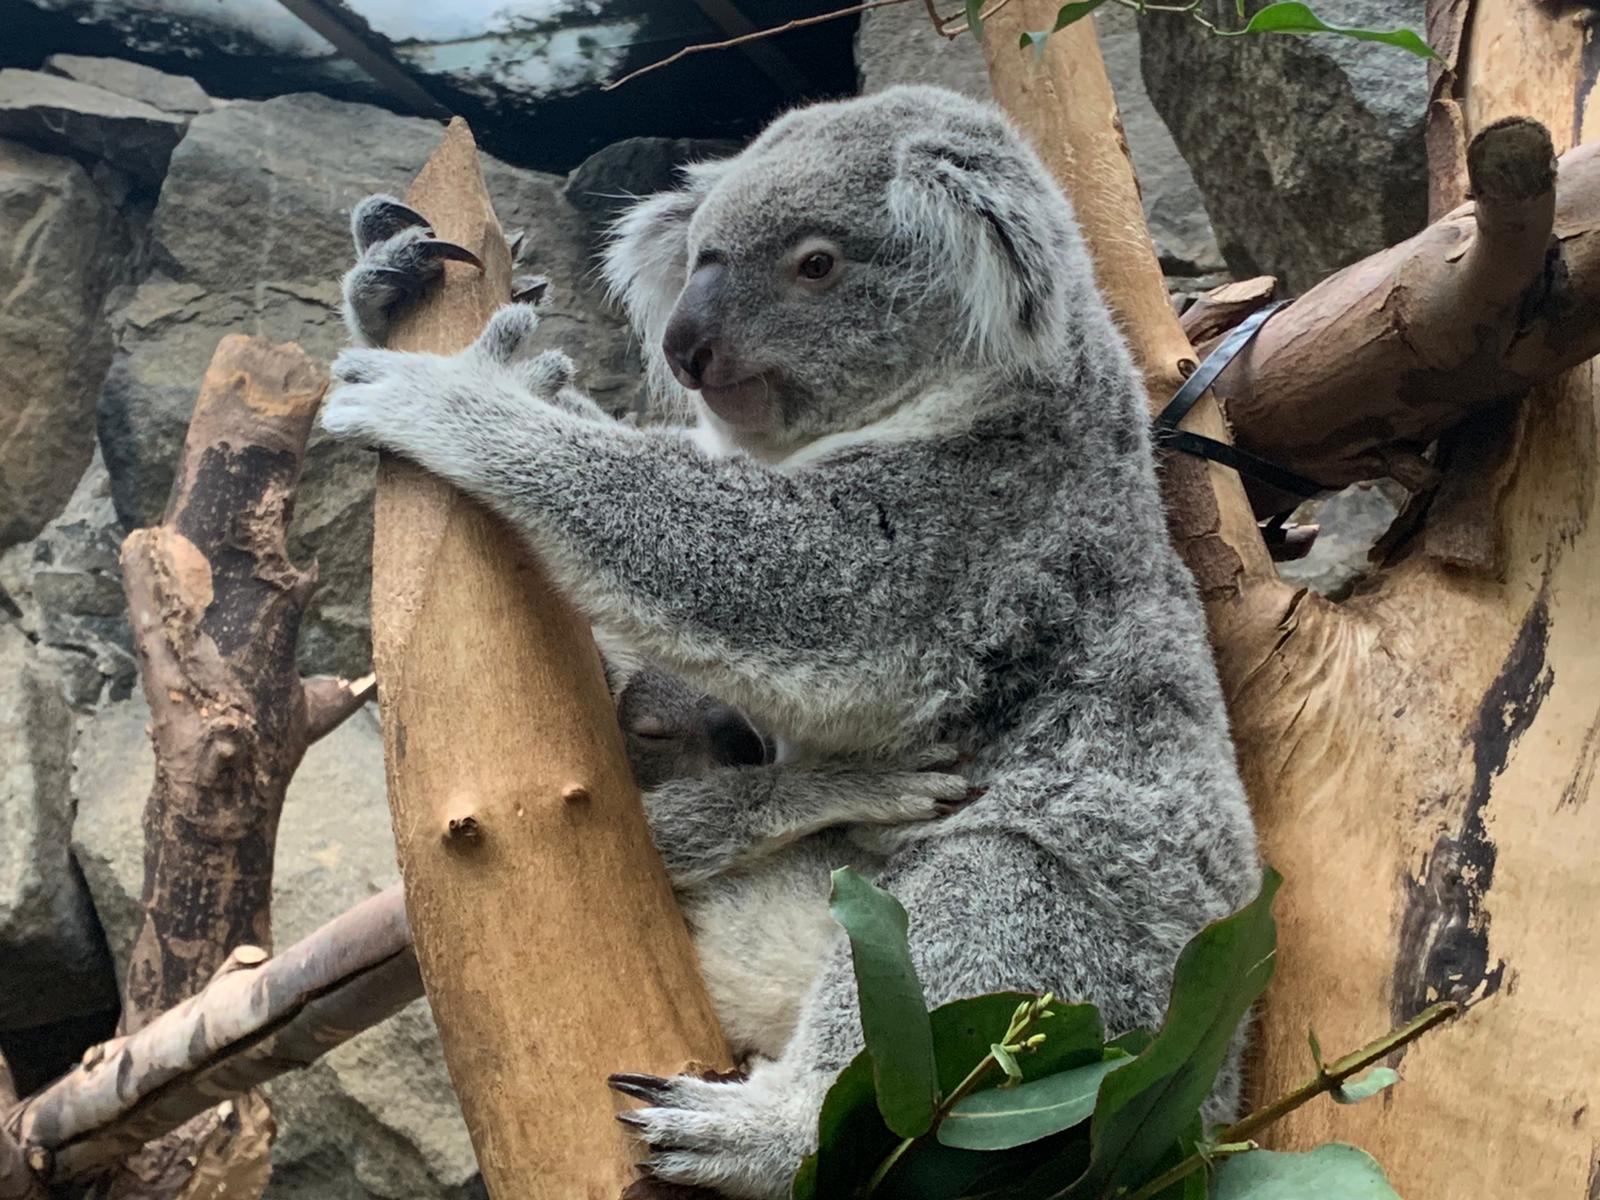 Koala joey and mother